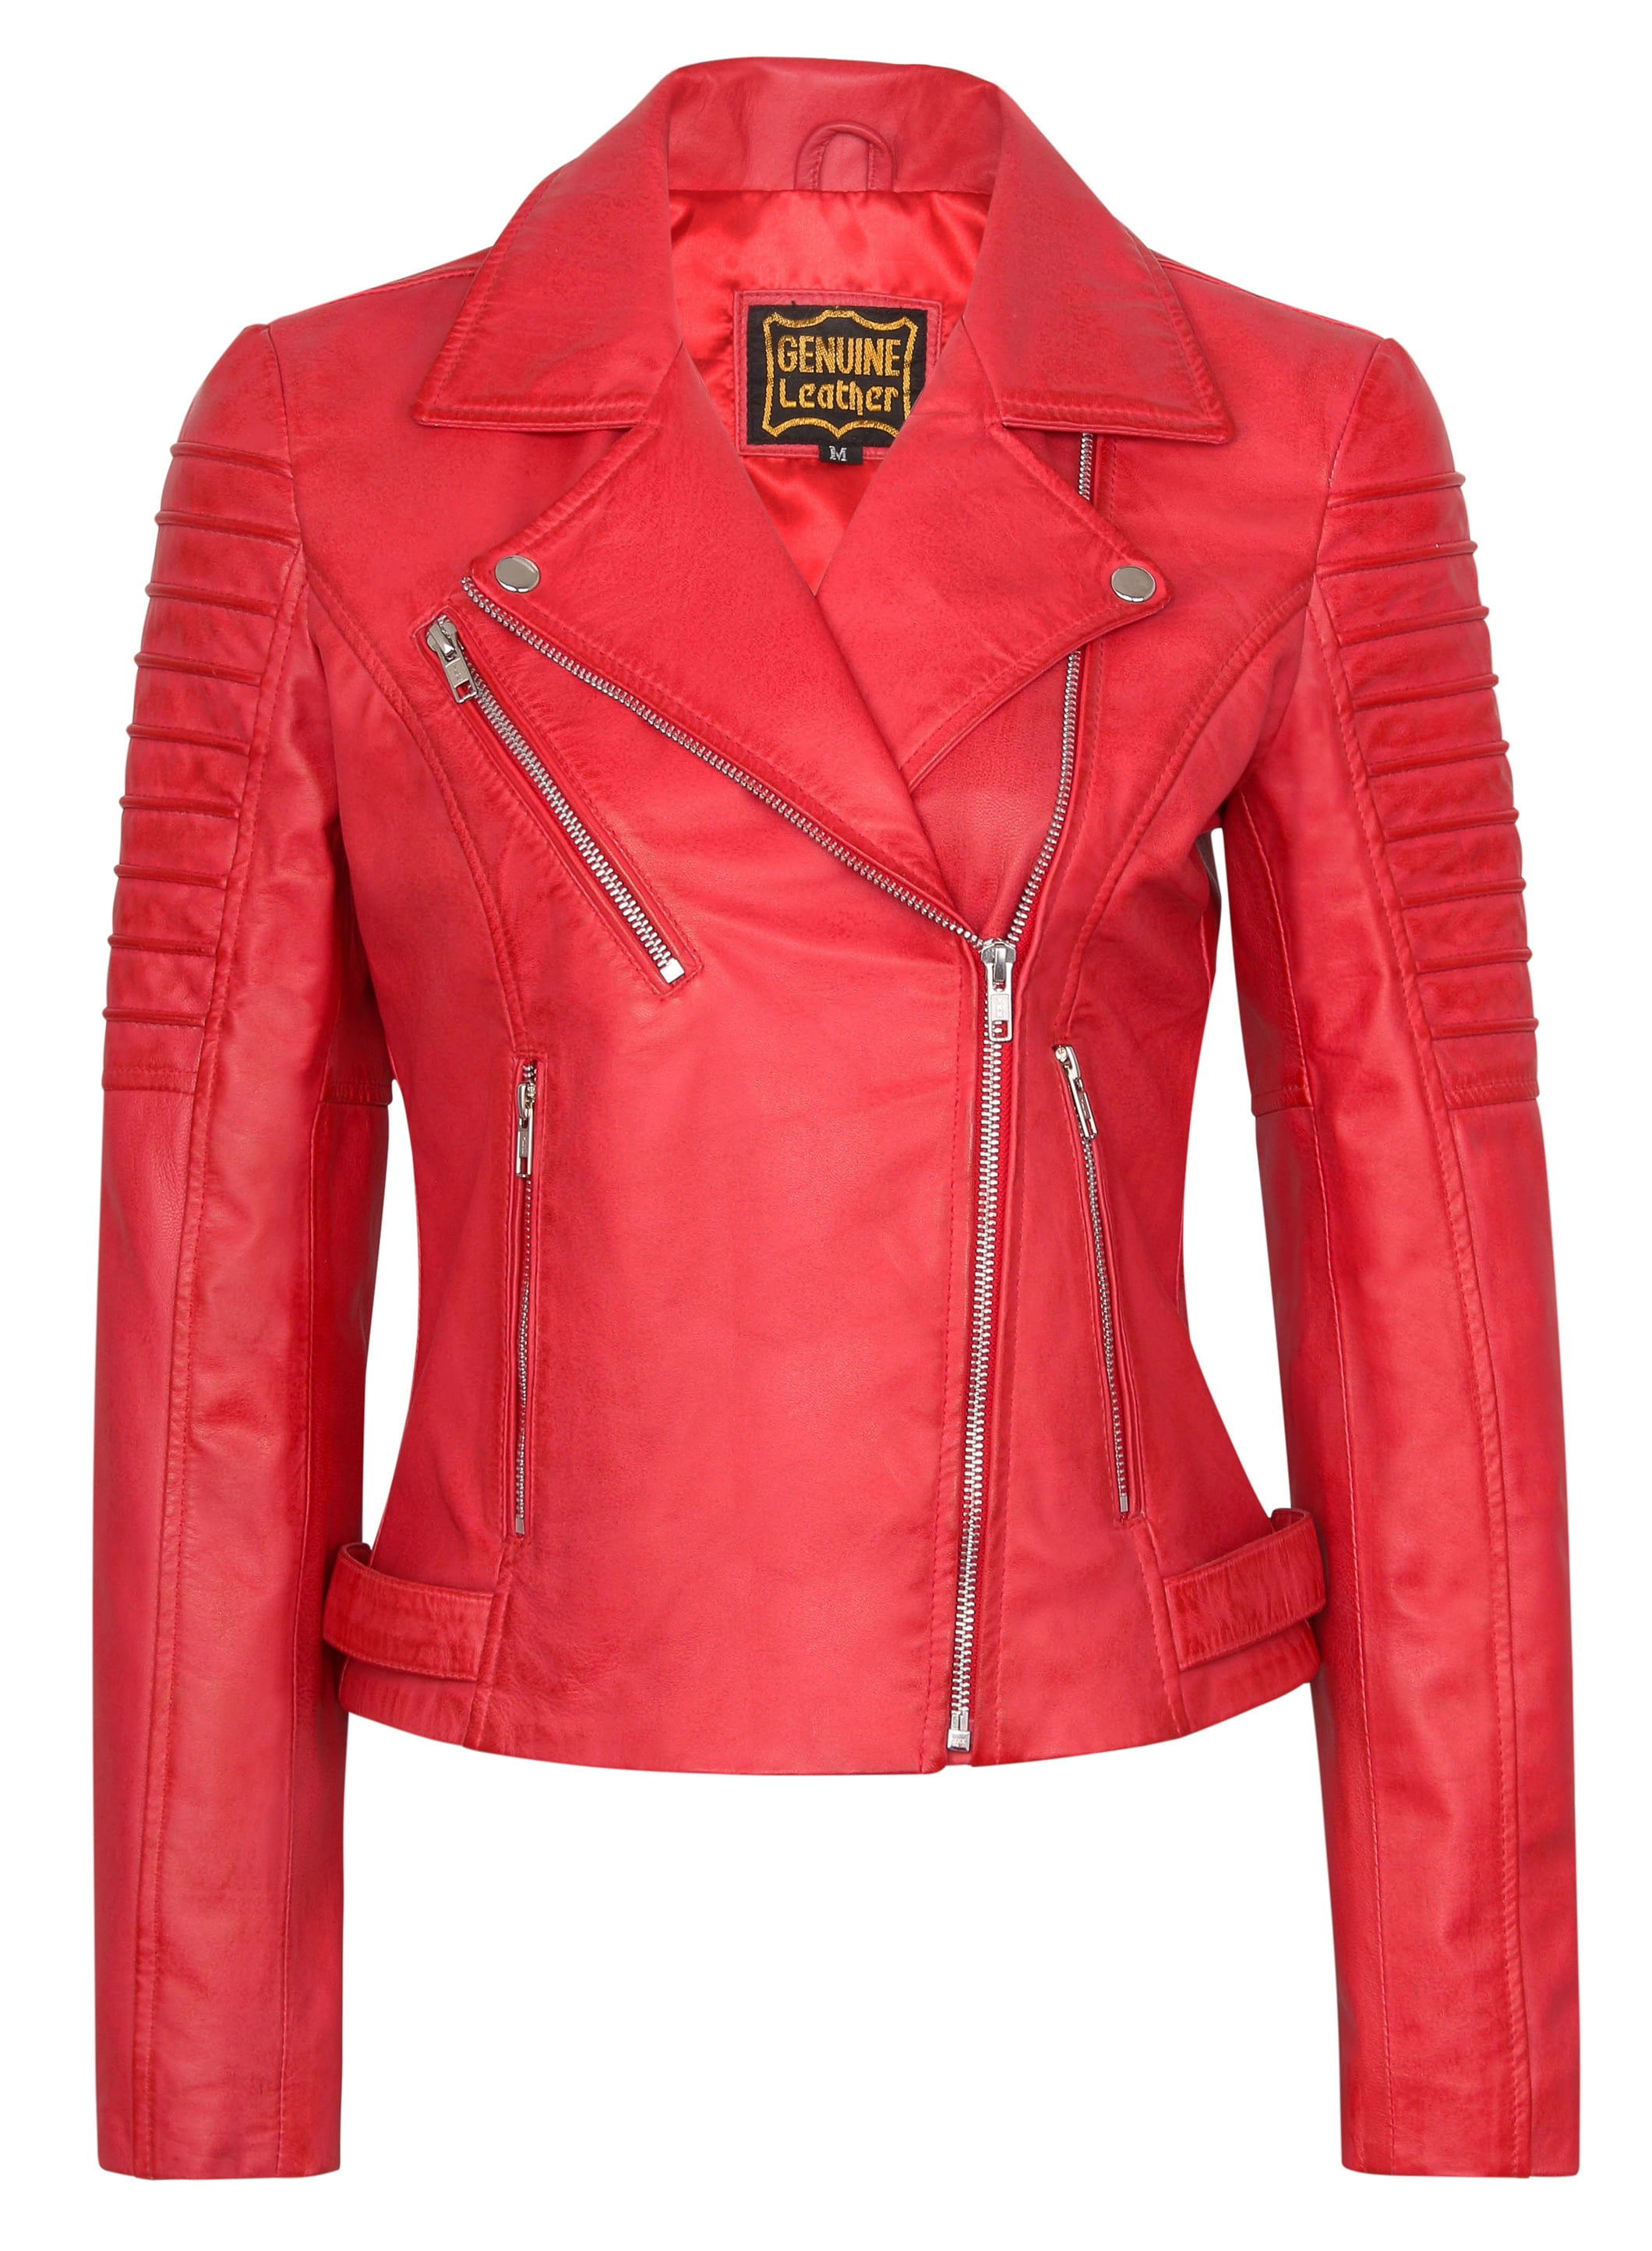 Seek Comfort Womens Leather Jacket Bomber Biker Motorcycle Real Lambskin Leather Jacket for Women TAN Jacket Coat